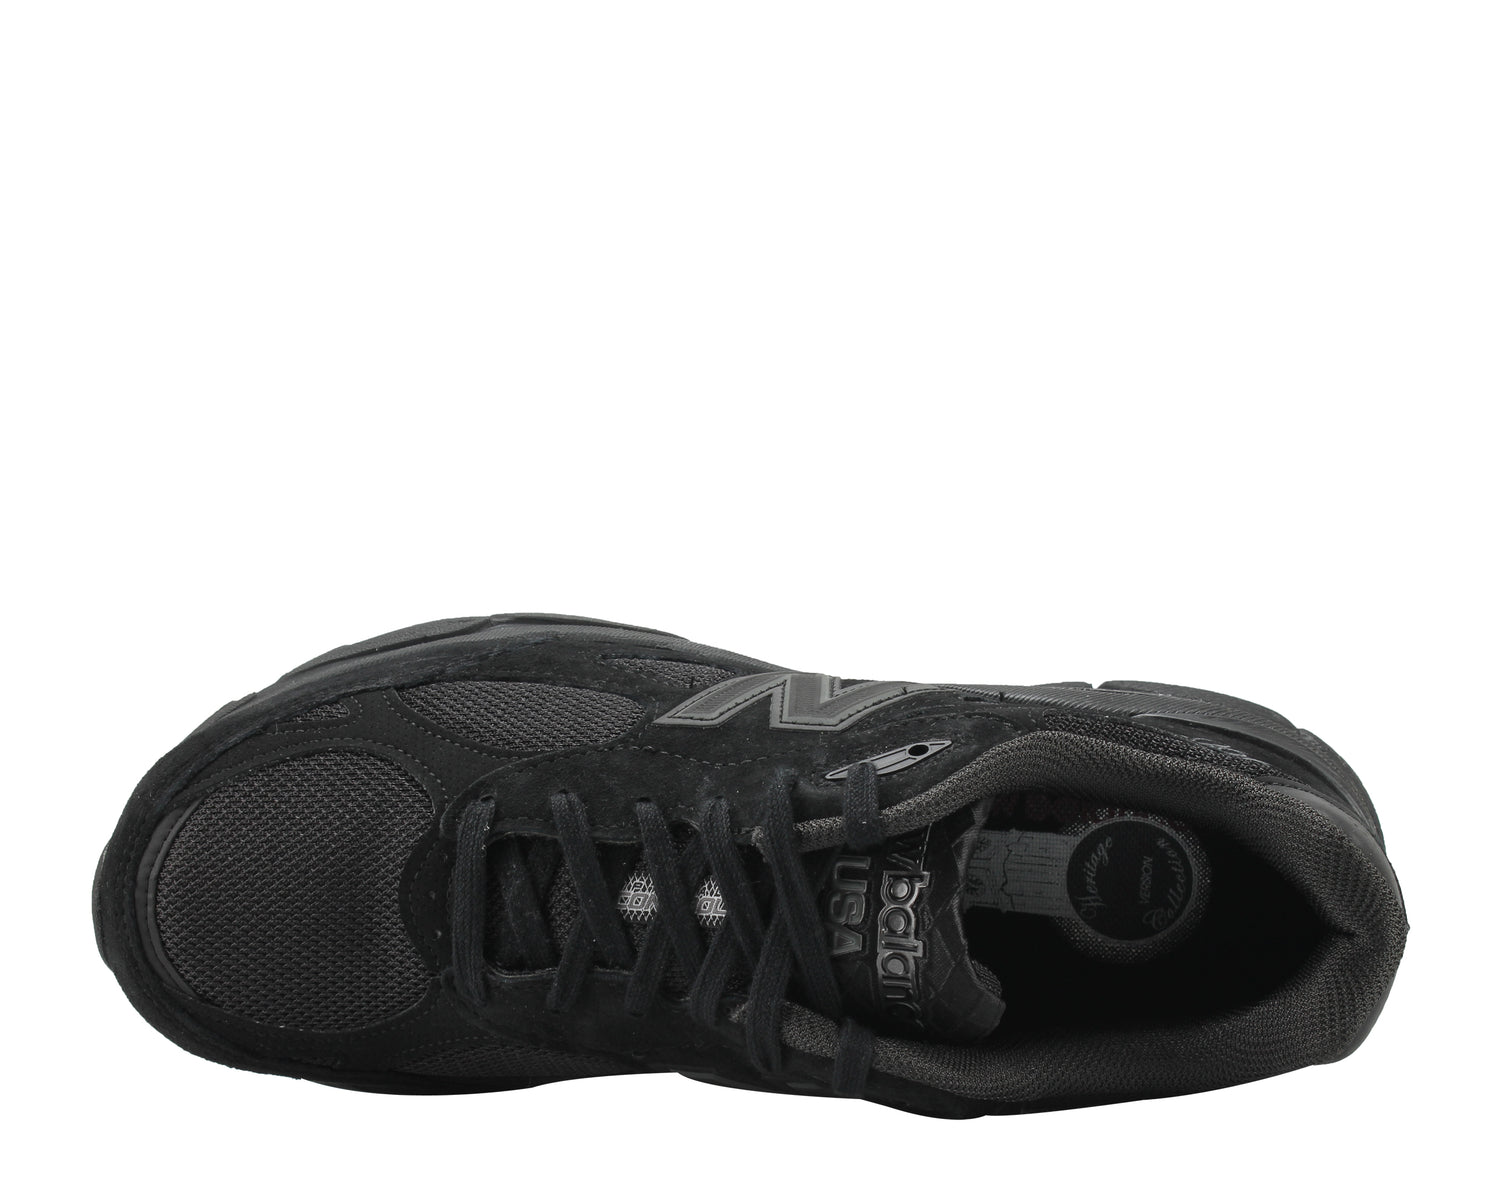 New Balance 990v3 Men's Running Shoes